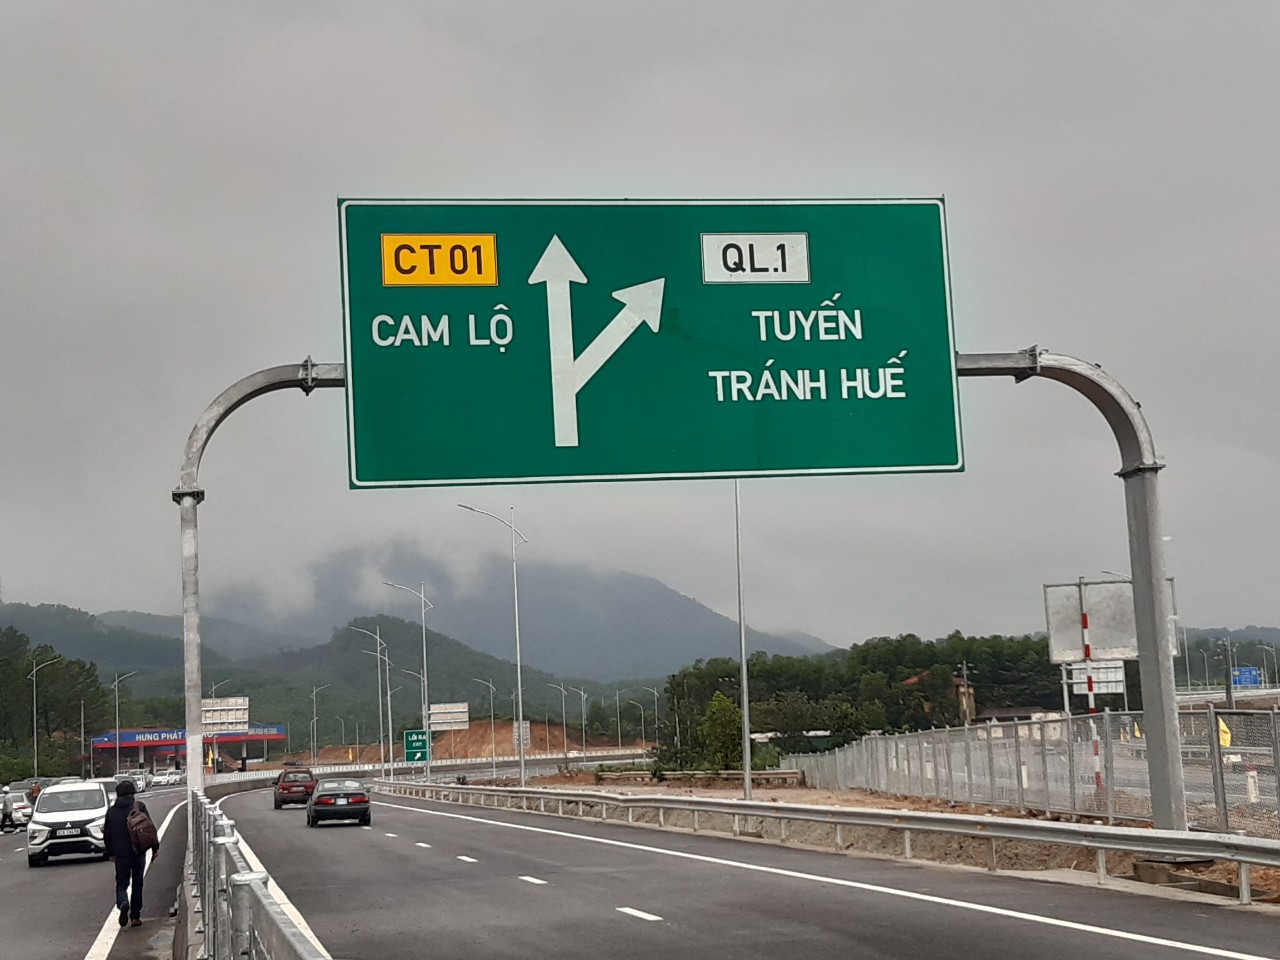 Cao tốc Cam Lộ - La Sơn dài 98,3 km đi qua 2 tỉnh Quảng Trị - Thừa Thiên - Huế.